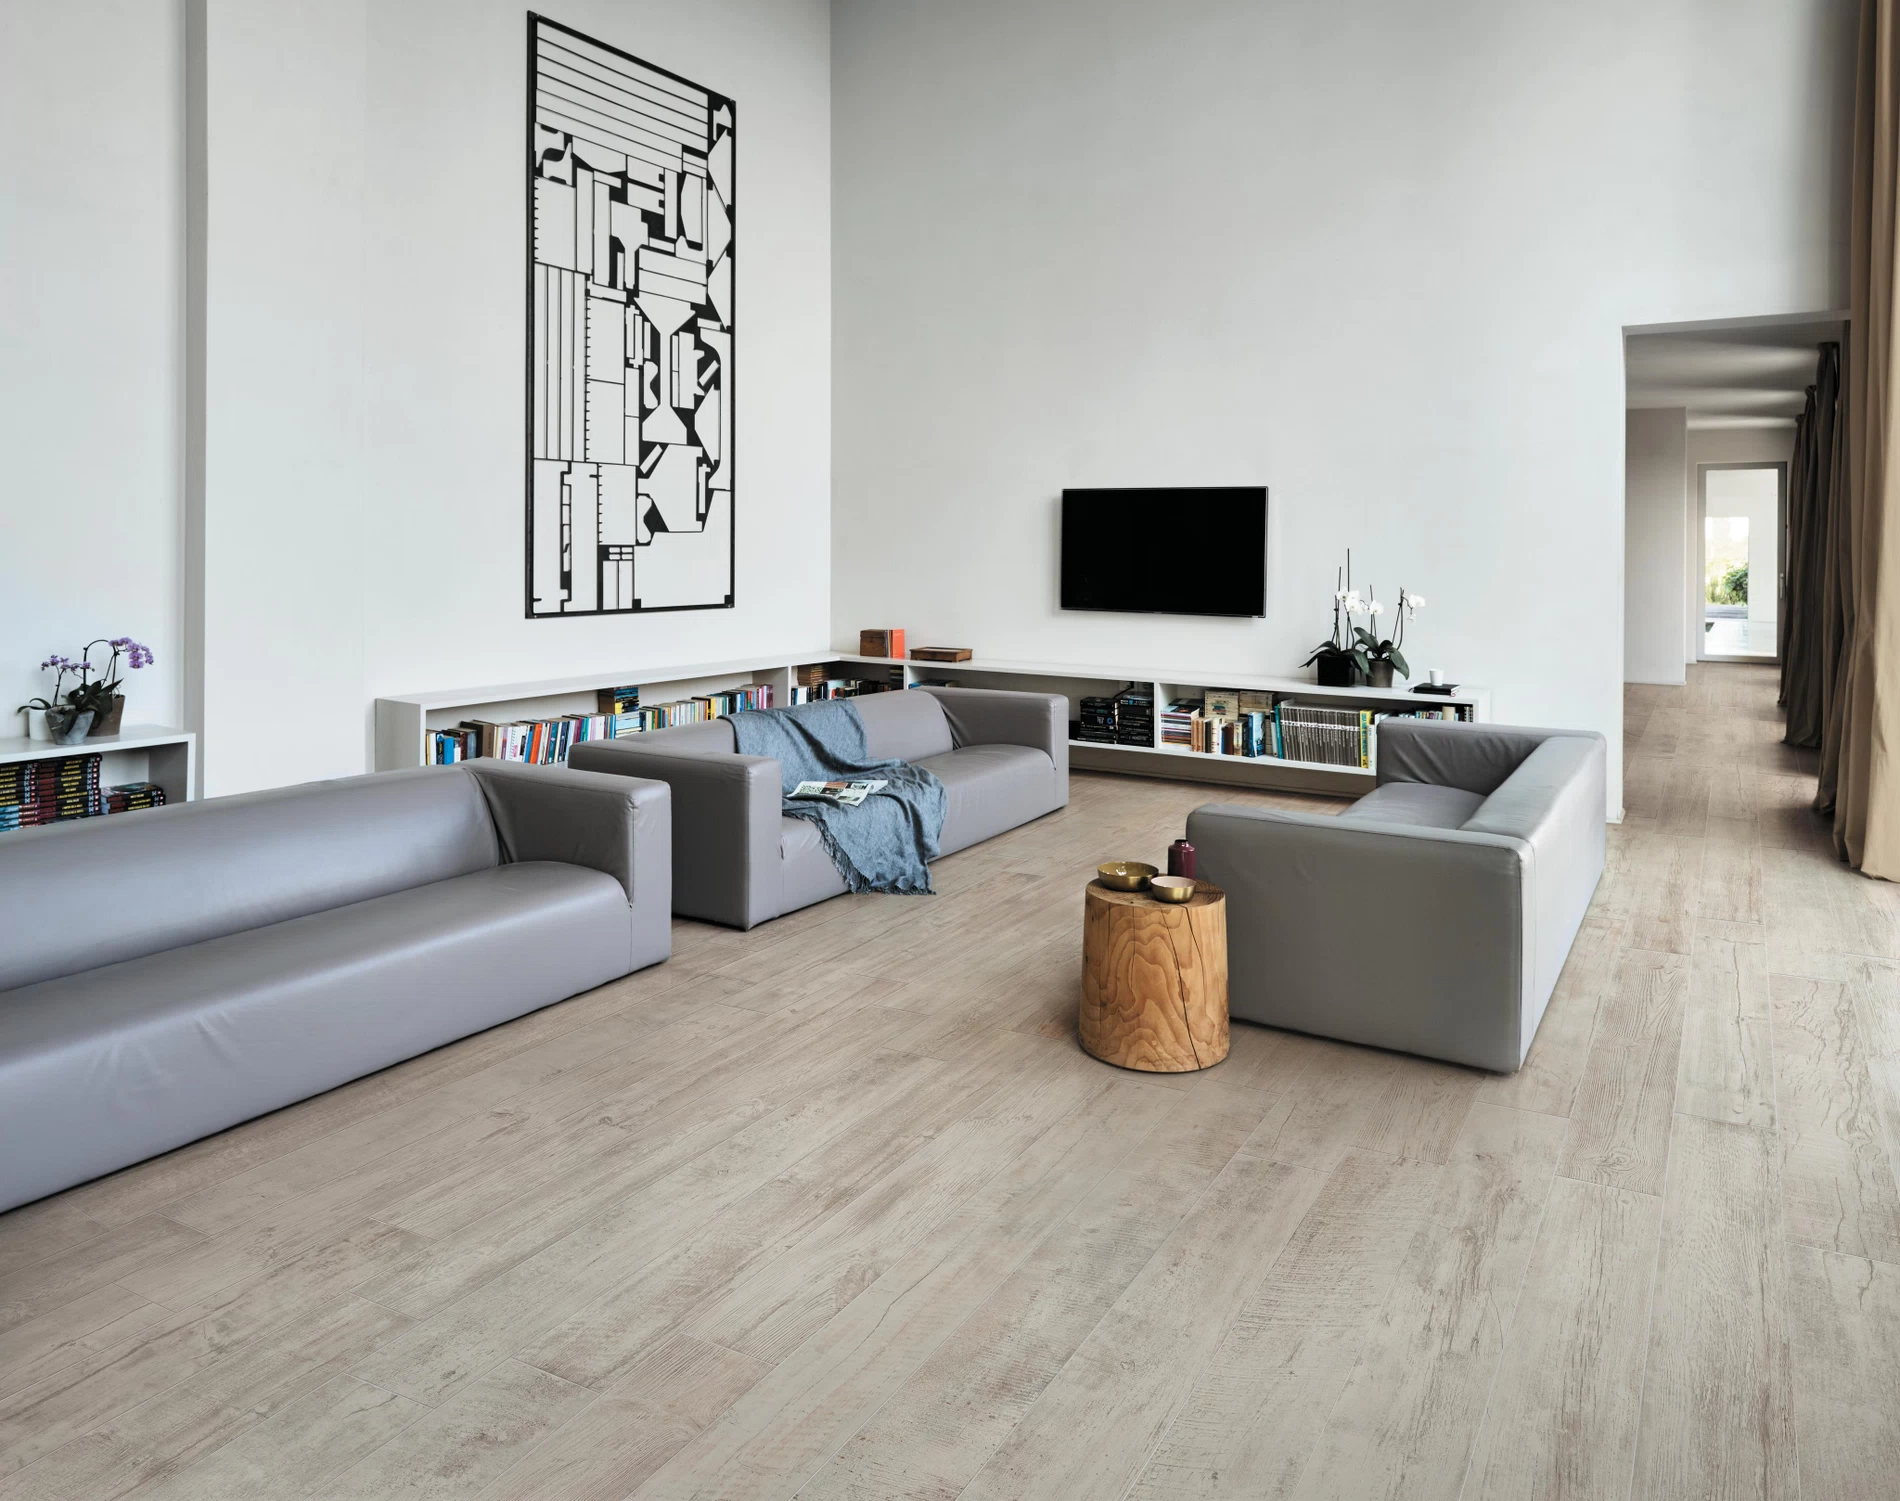 Living Room Tiles Premium Italian, Living Room Tiles